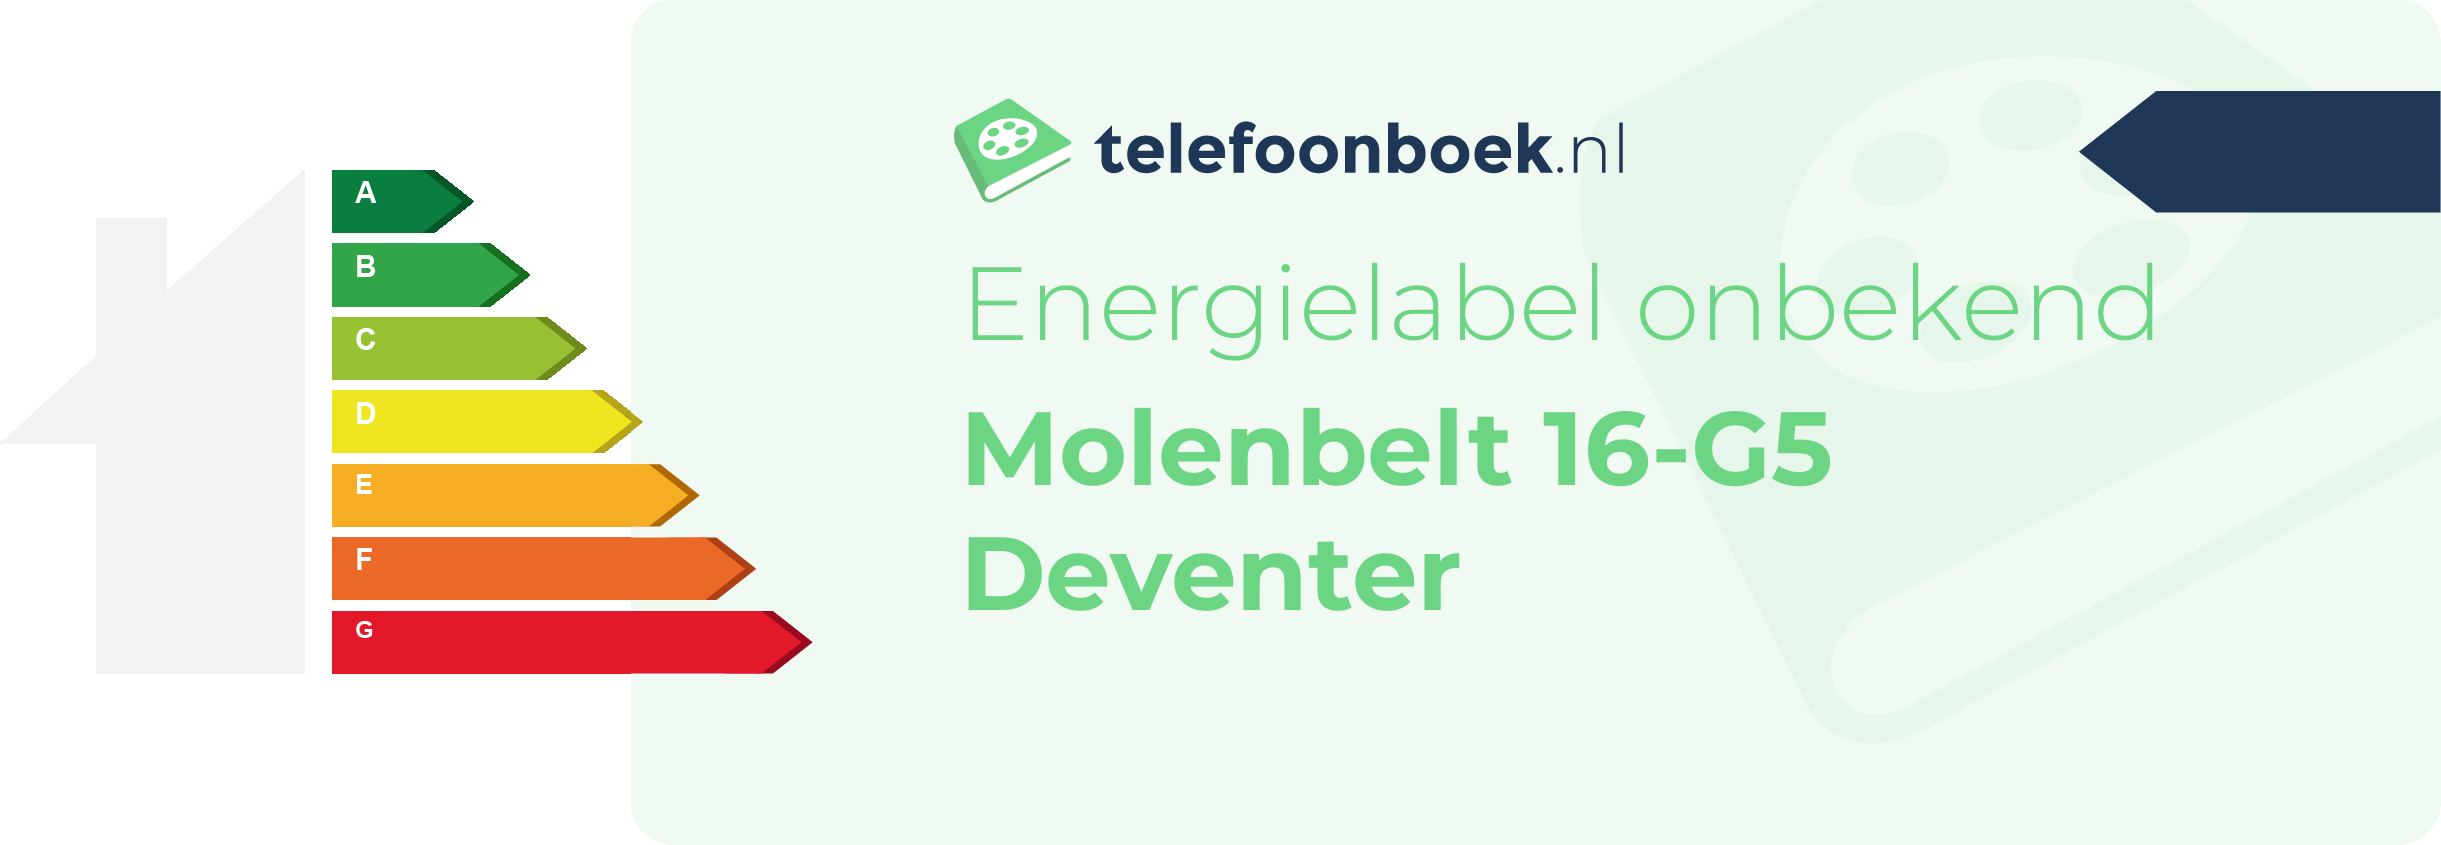 Energielabel Molenbelt 16-G5 Deventer